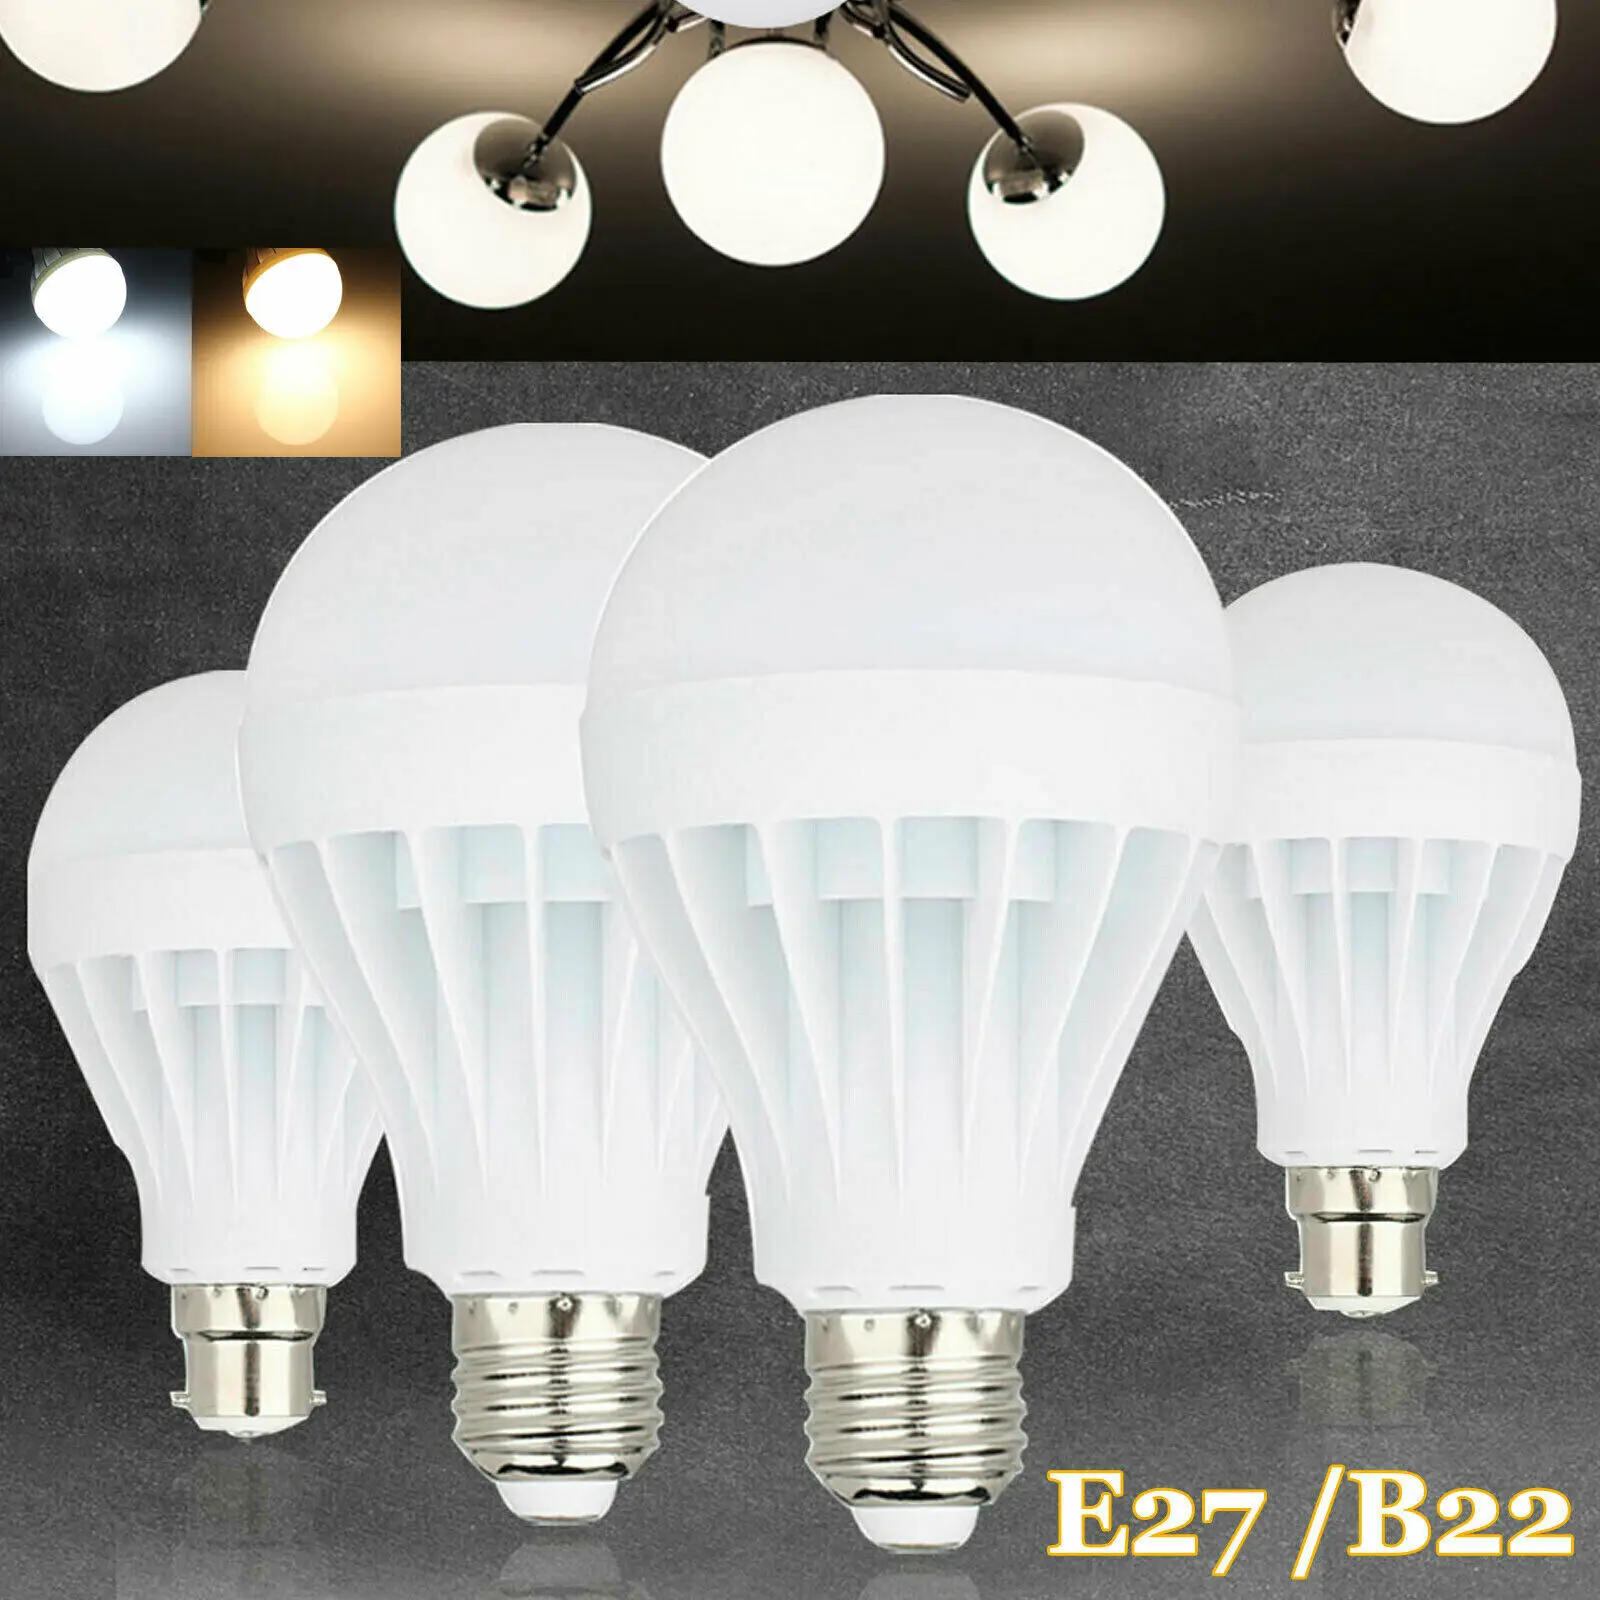 

3W 5W 7W 9W 12W LED Globe Bulb Candle Light Bulbs B22 E27 E14 B15 Save Energy SMD 110V 220V for Home Chandelier Flame lamp Repla